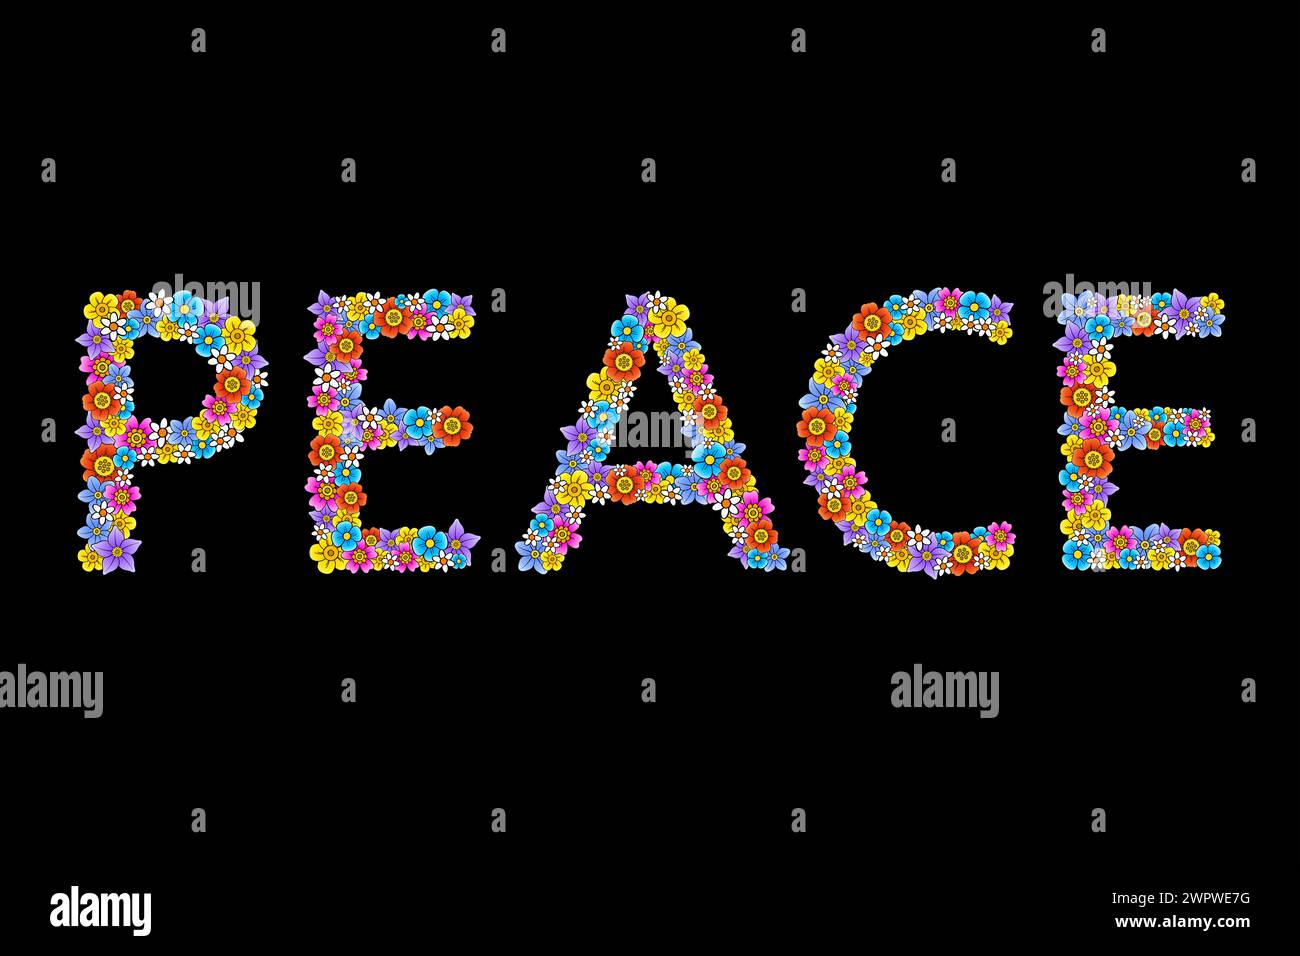 Scritta "PEACE", fatta di fiori fantasia colorati. Numerosi fiori vivaci sono disposti in modo casuale, per formare la parola inglese PACE. Simbolo anti-guerra. Foto Stock